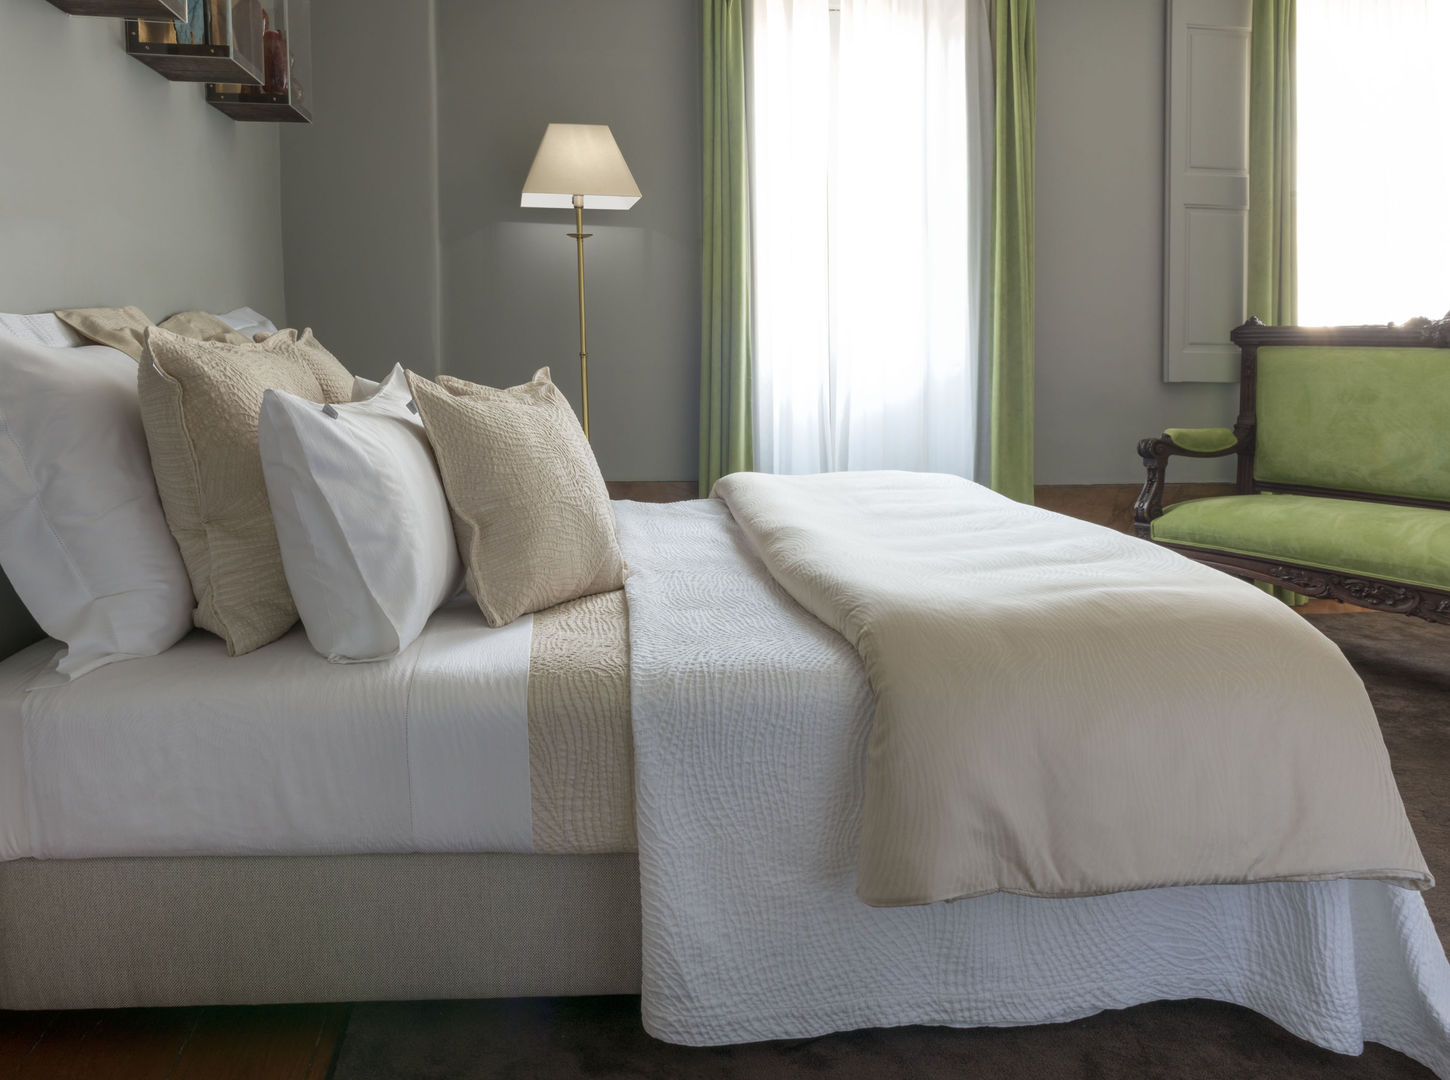 Isadora Paris Luxury Bed Linen - Savanne, Isadora Paris Isadora Paris Modern style bedroom Textiles